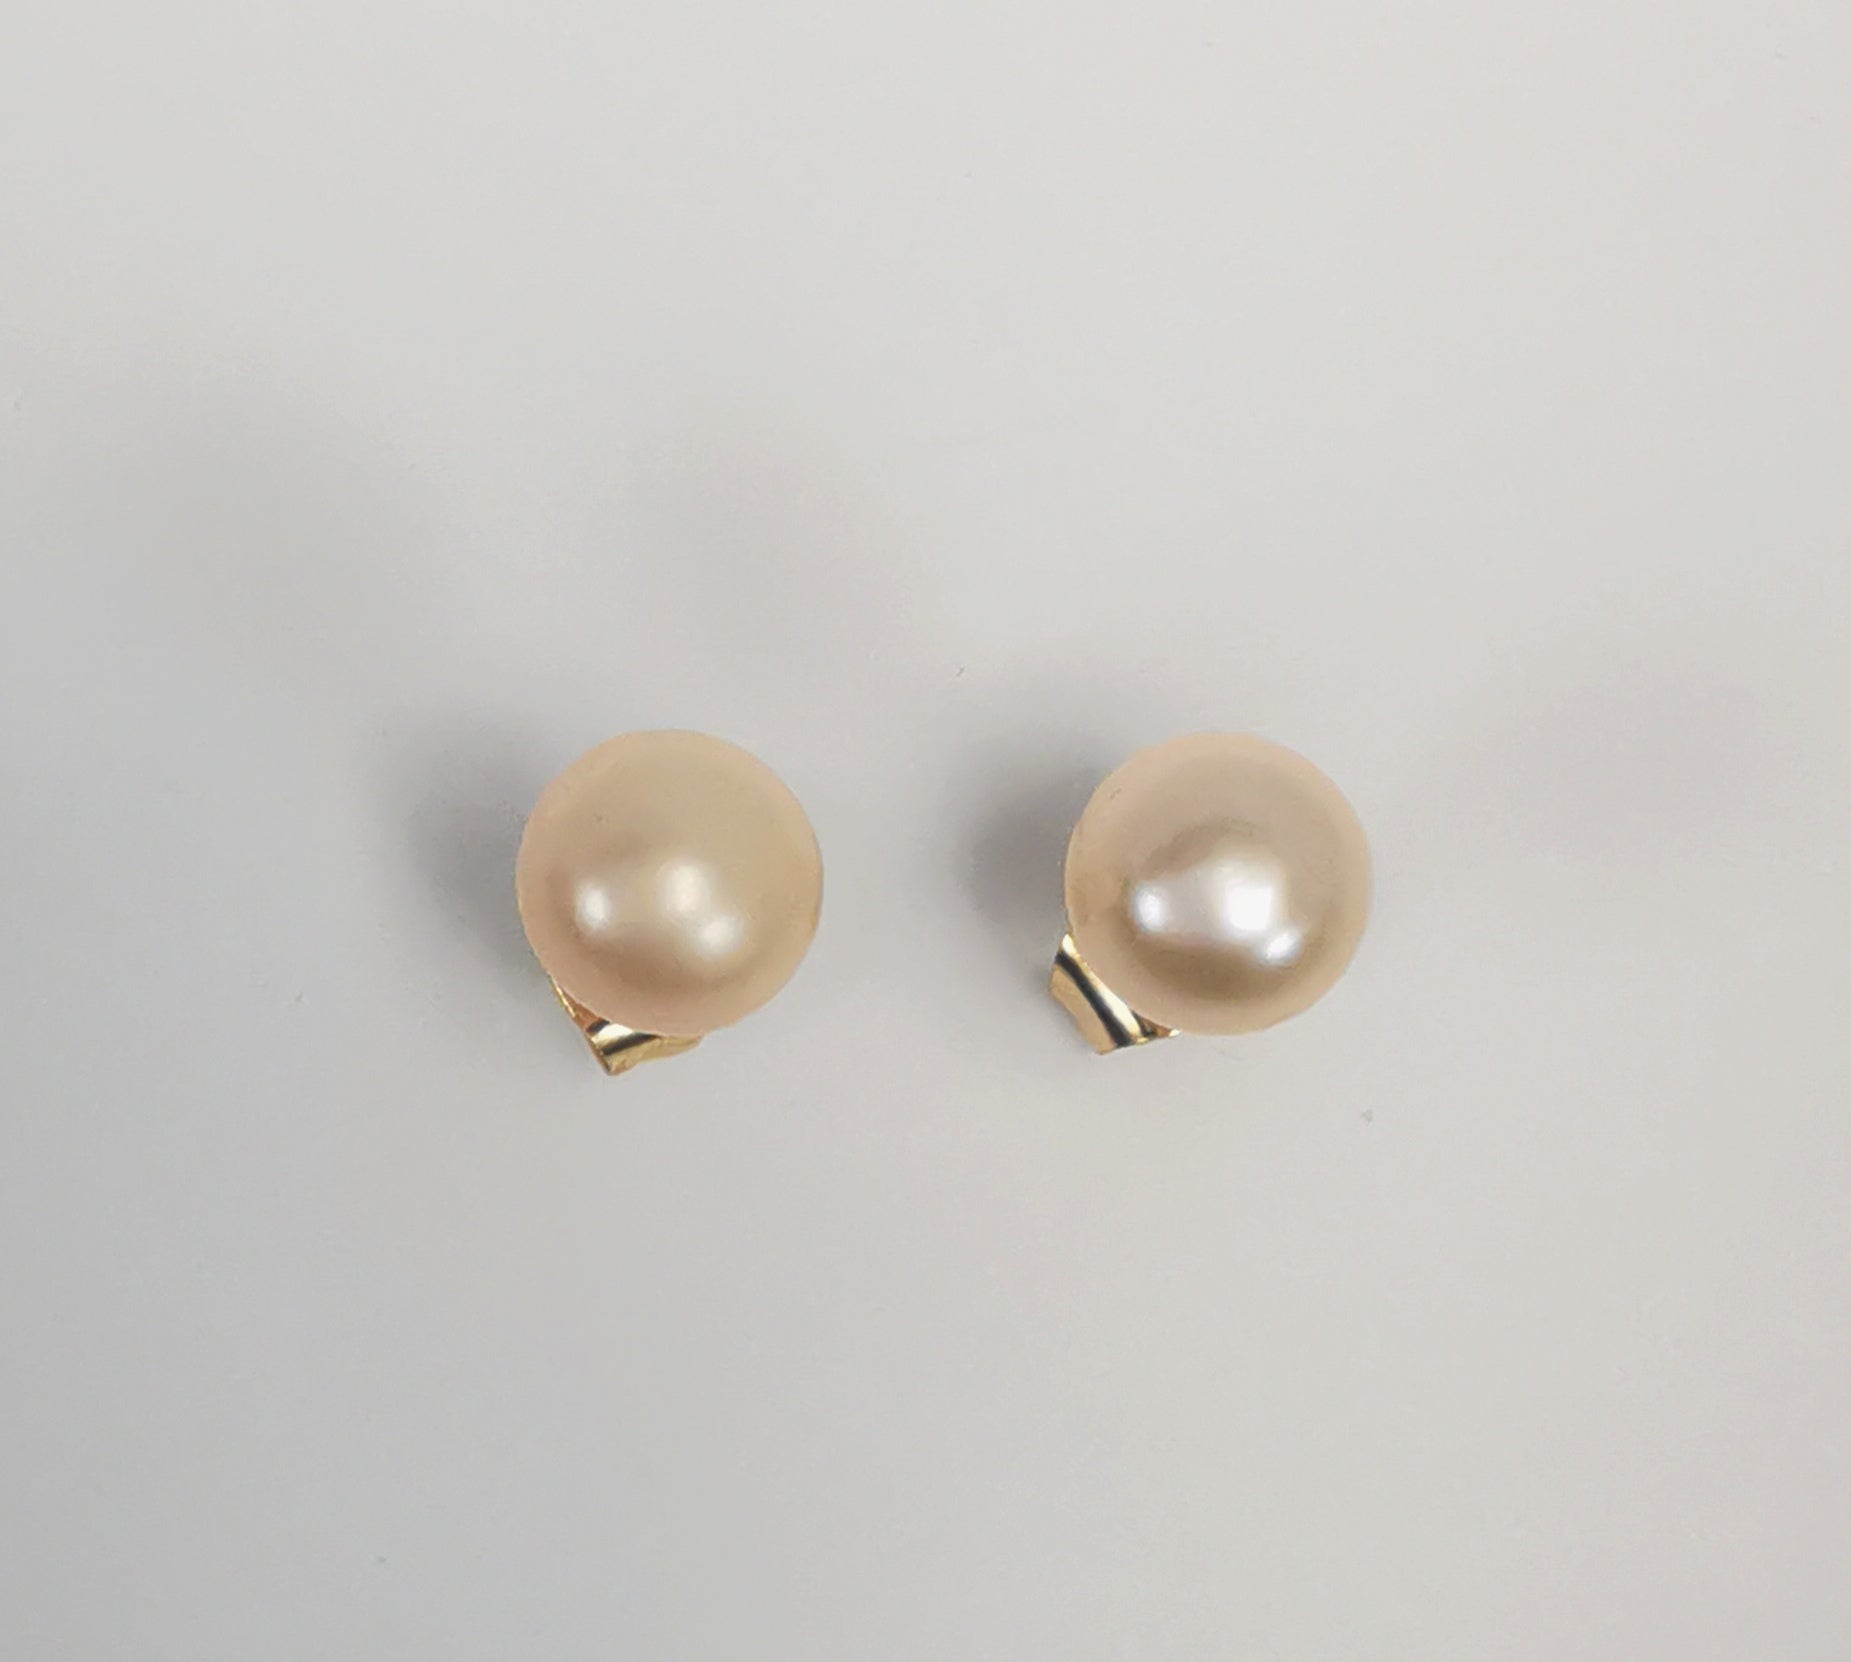 Boucles d'oreilles perles de culture rose 7mm sur clous plaqués or. Présentées l'une au dessus de l'autre plantées sur un fond blanc. Vue de dessus.